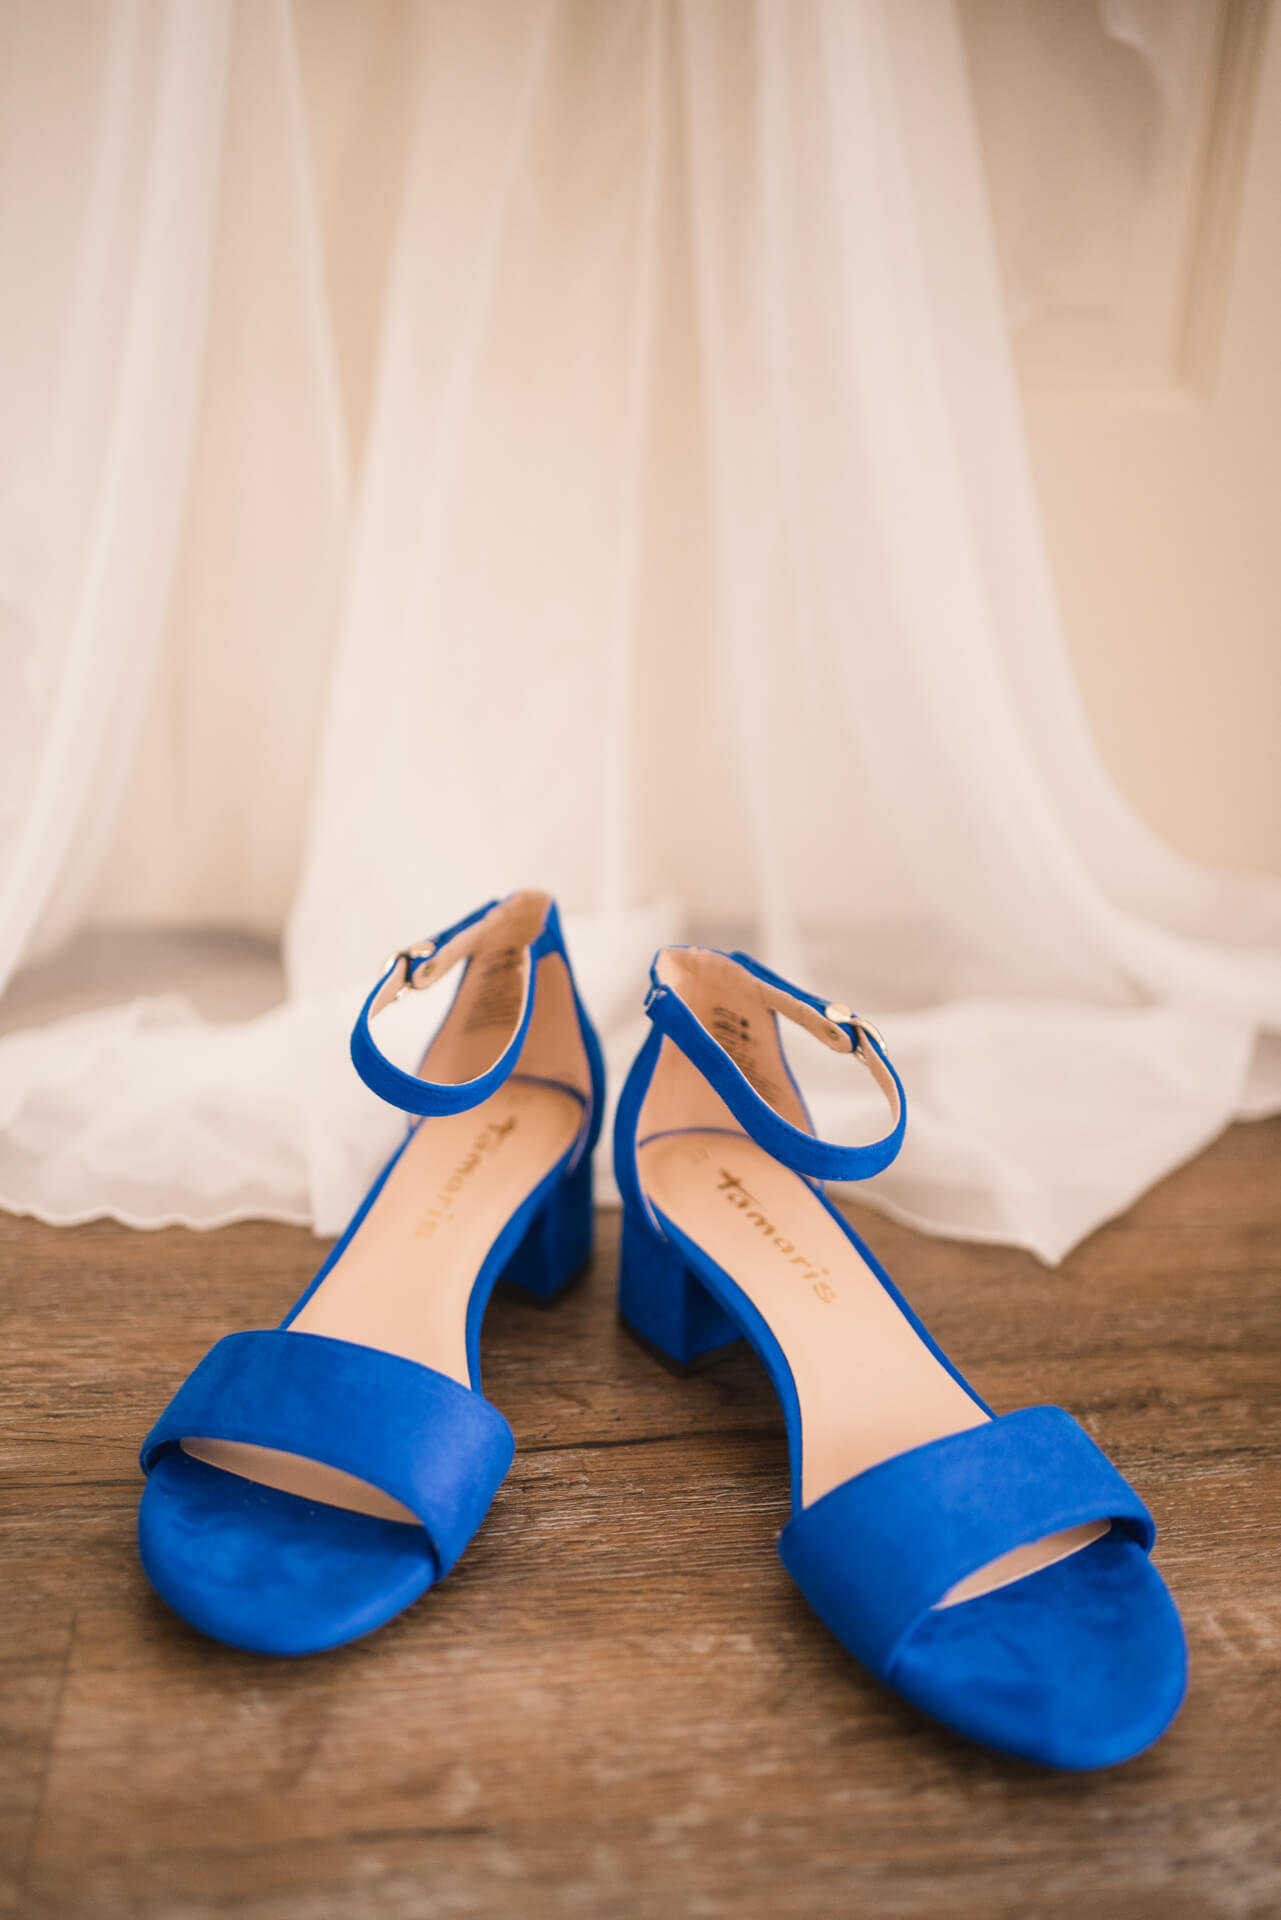 Blaue Brautschuhe mit Absatz.